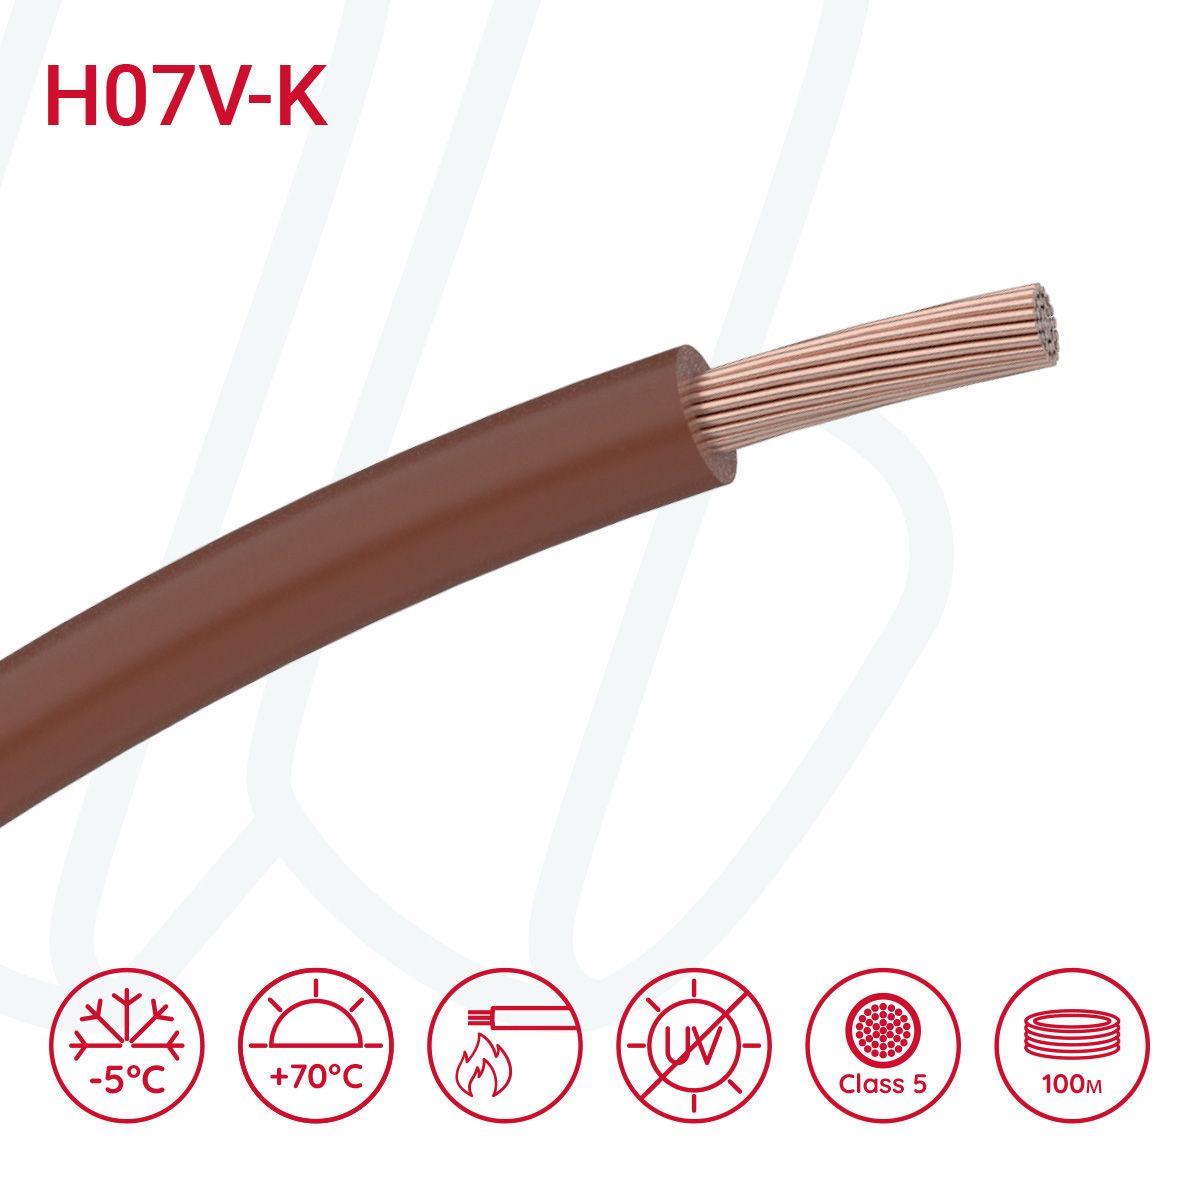 Провід монтажний гнучкий H07V-K 4 мм² коричневий, 01, 4